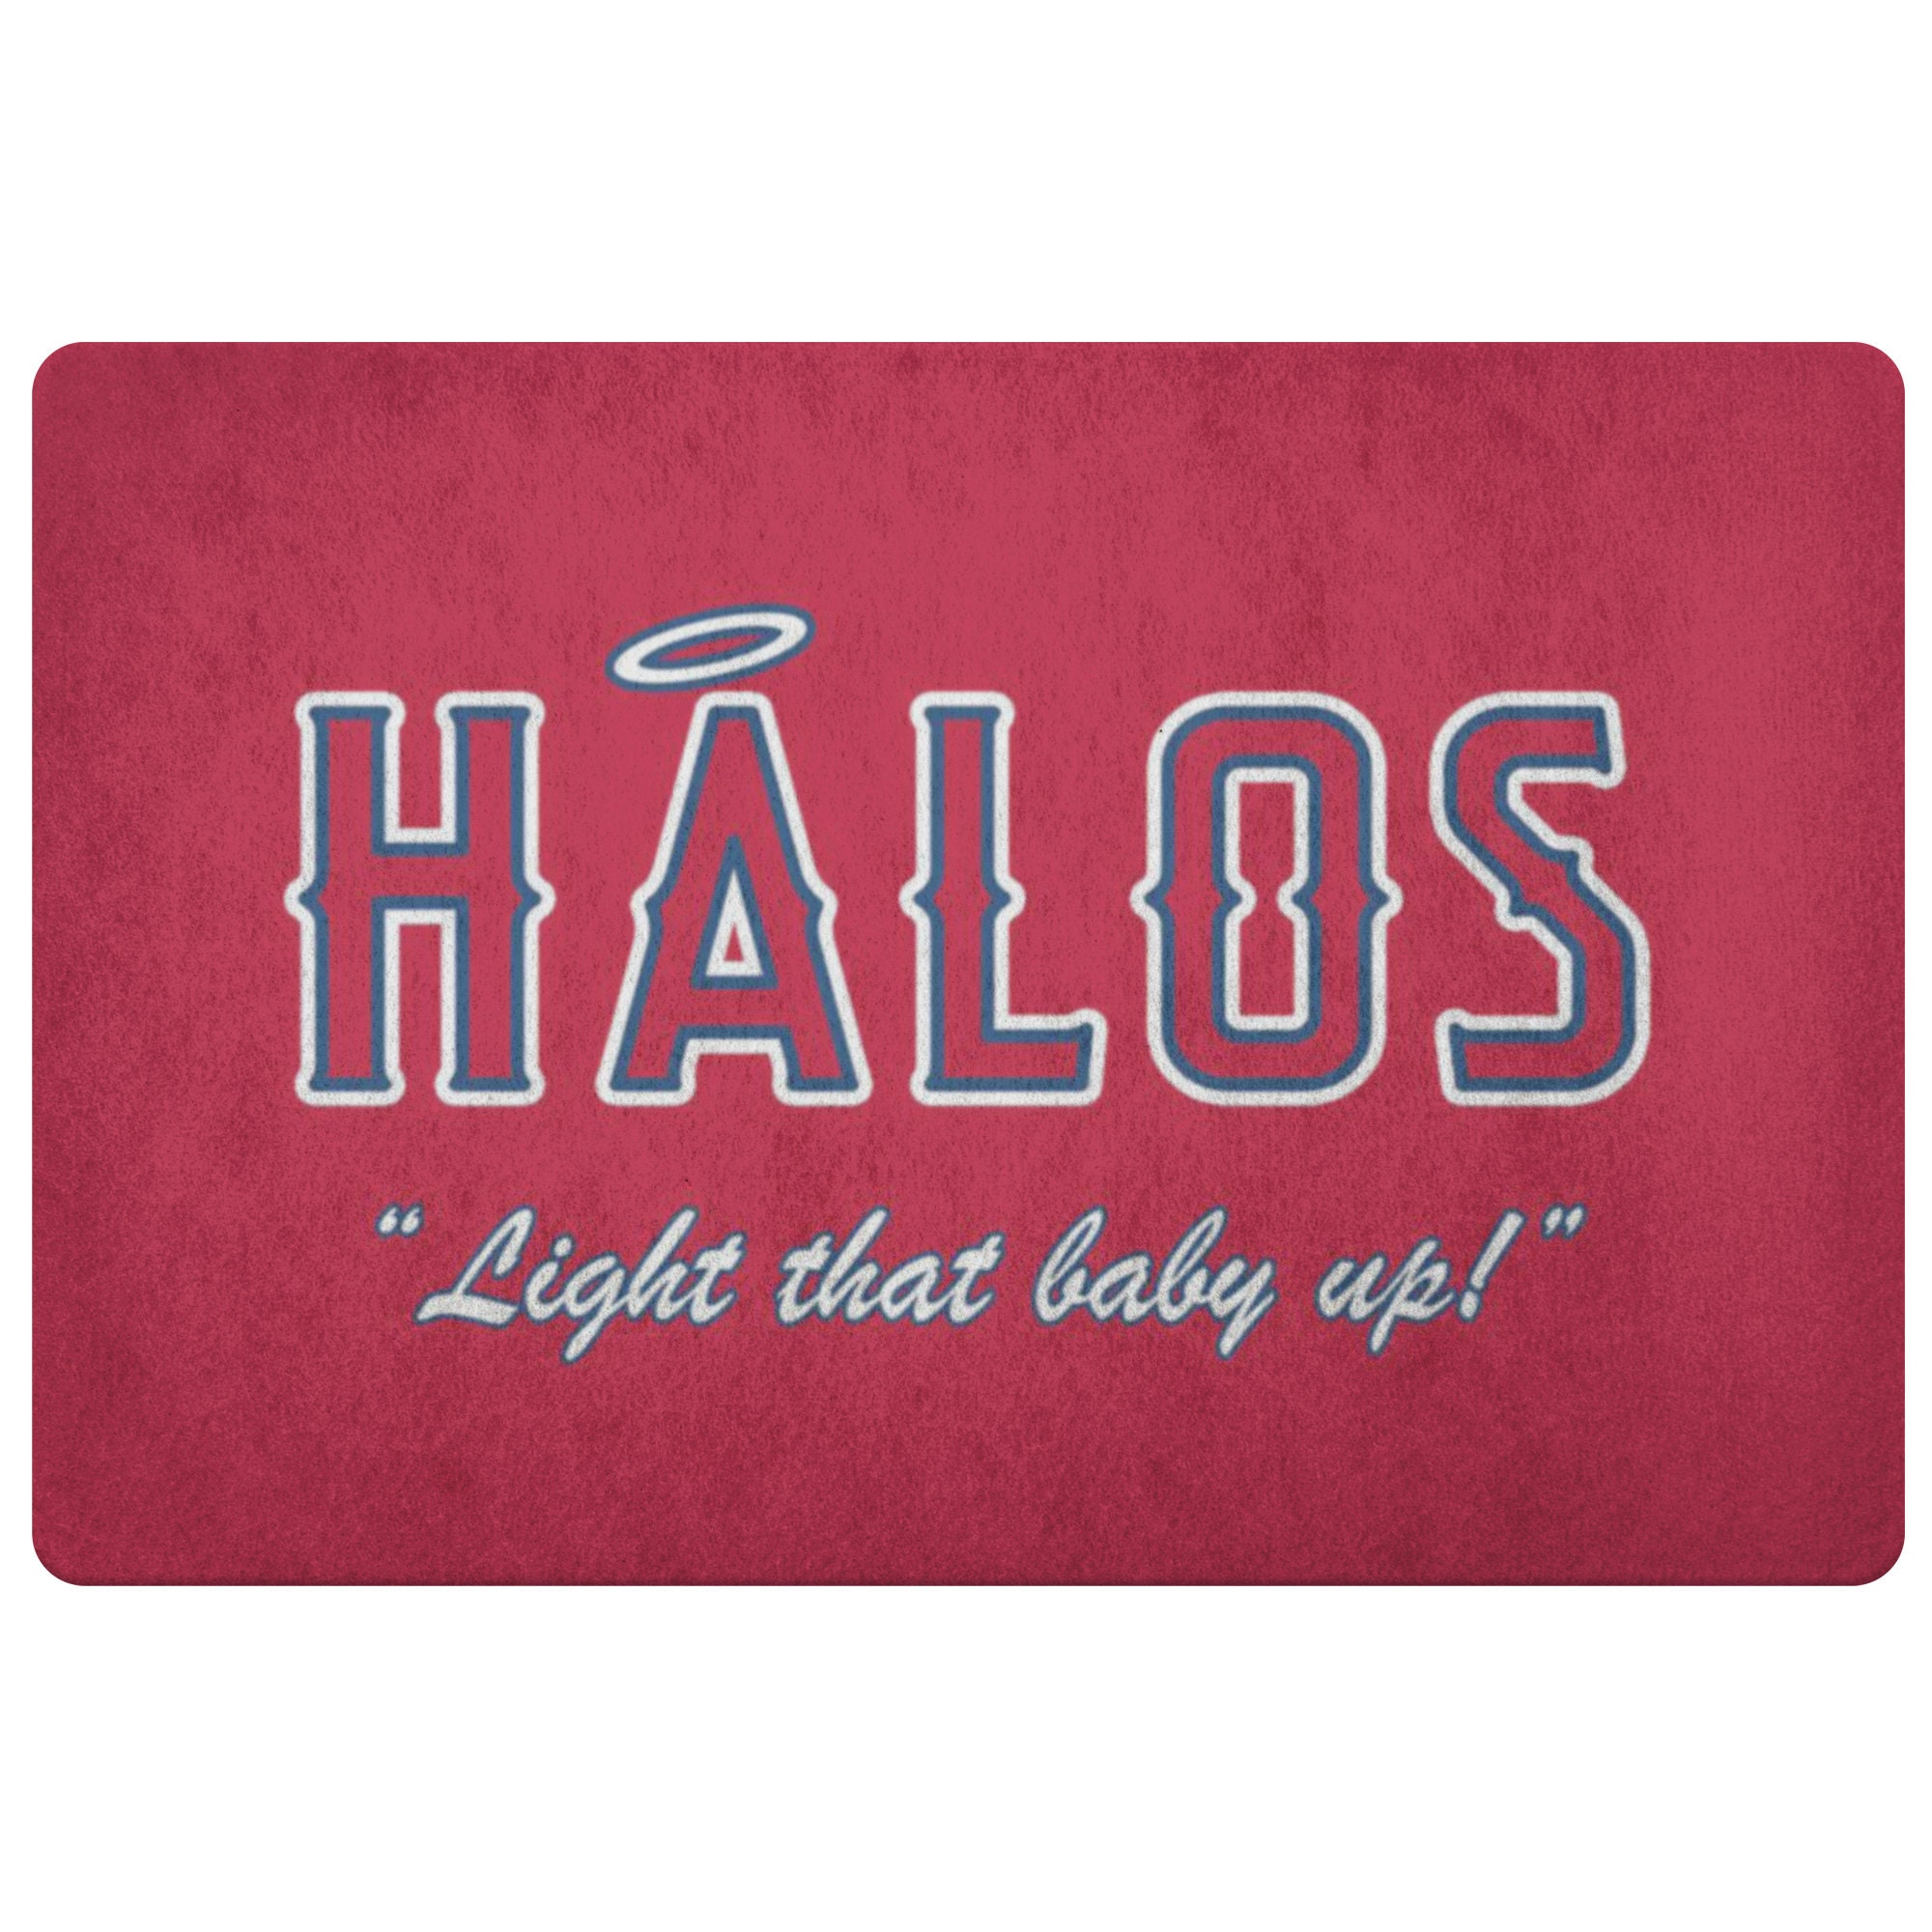 Buy HALOS Doormat Los Angeles Angels Baseball Gift Mike Online in India 